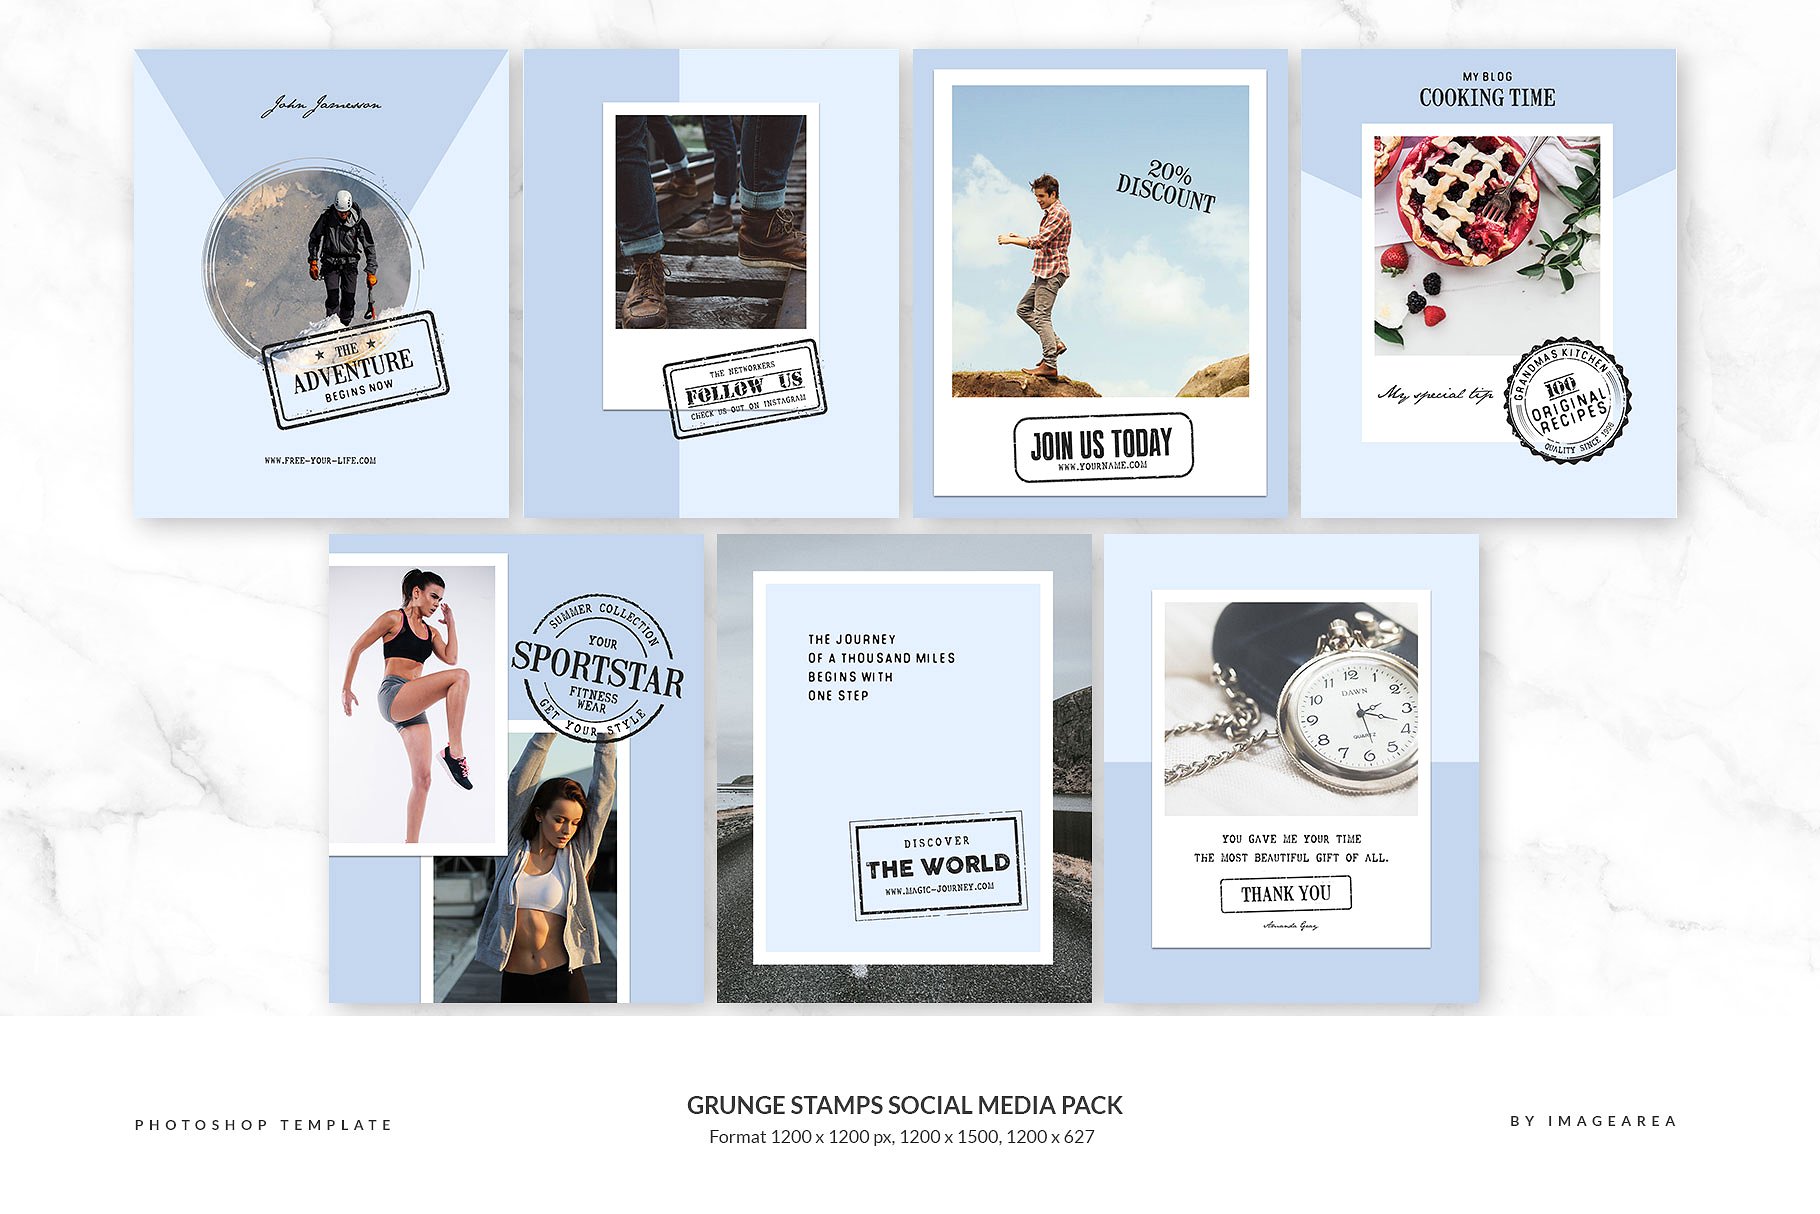 社交媒体、博客插图设计素材包 Grunge stamps Social Media Pack插图(4)